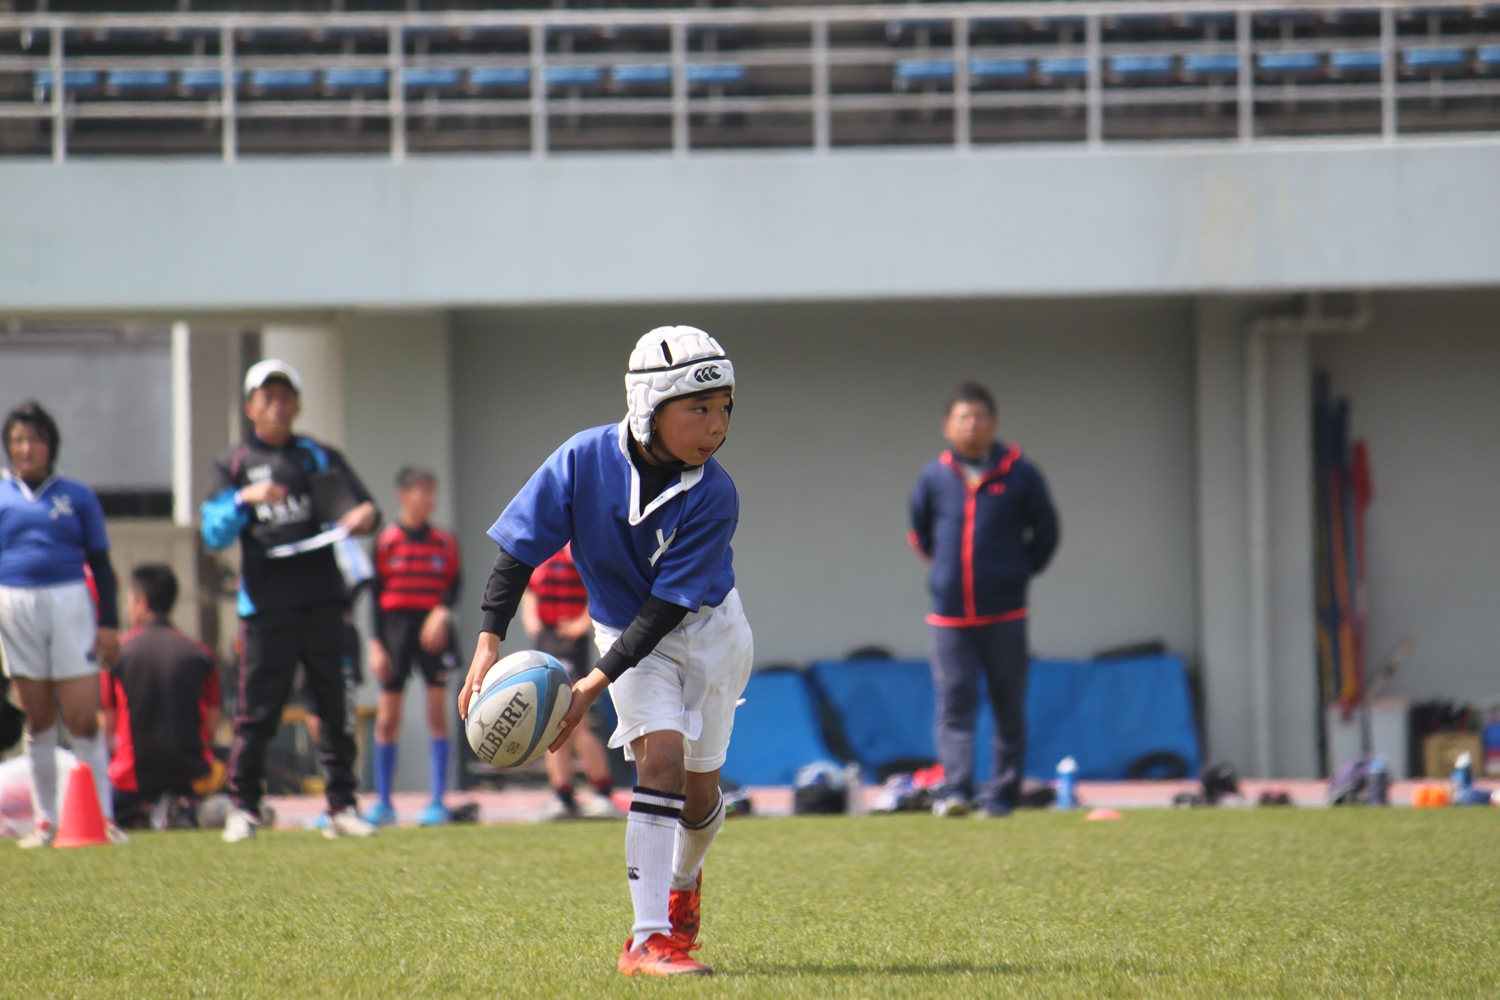 youngwave_kitakyusyu_rugby_school_simonosekikouryu2016028.JPG